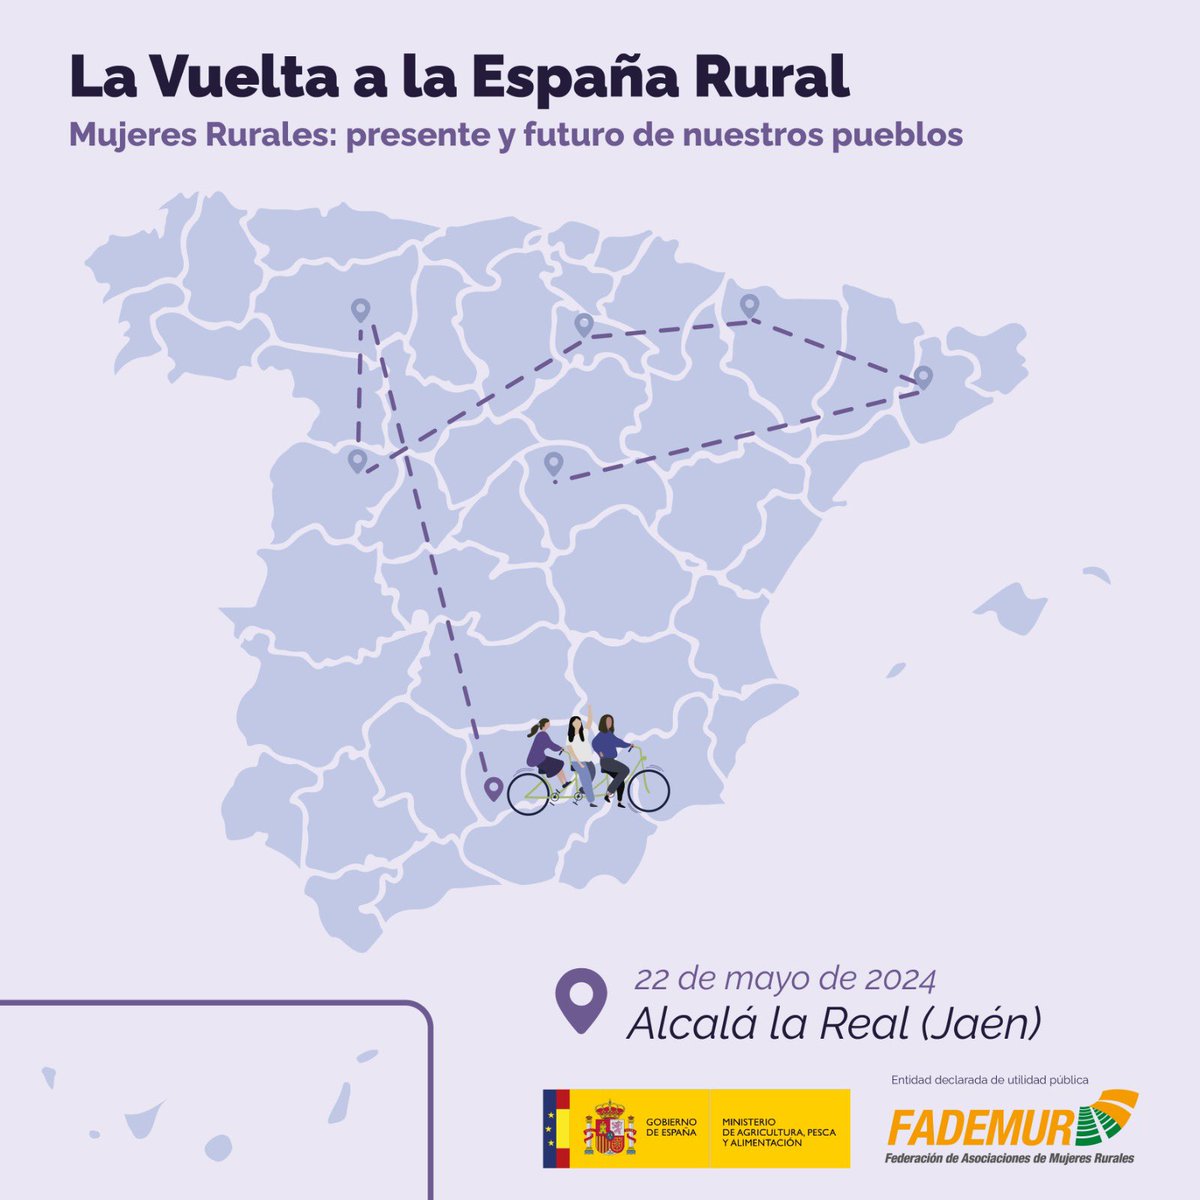 ¡Próxima parada de #LaVueltaalaEspañaRural confirmada!🤸‍♀️ La siguiente etapa de la gira que acerca a los pueblos oportunidades para las #mujeresrurales será en: 📍En #AlcaláLaReal (#Jaén), el próximo 22 de mayo 🗓️ ¿Te vienes?